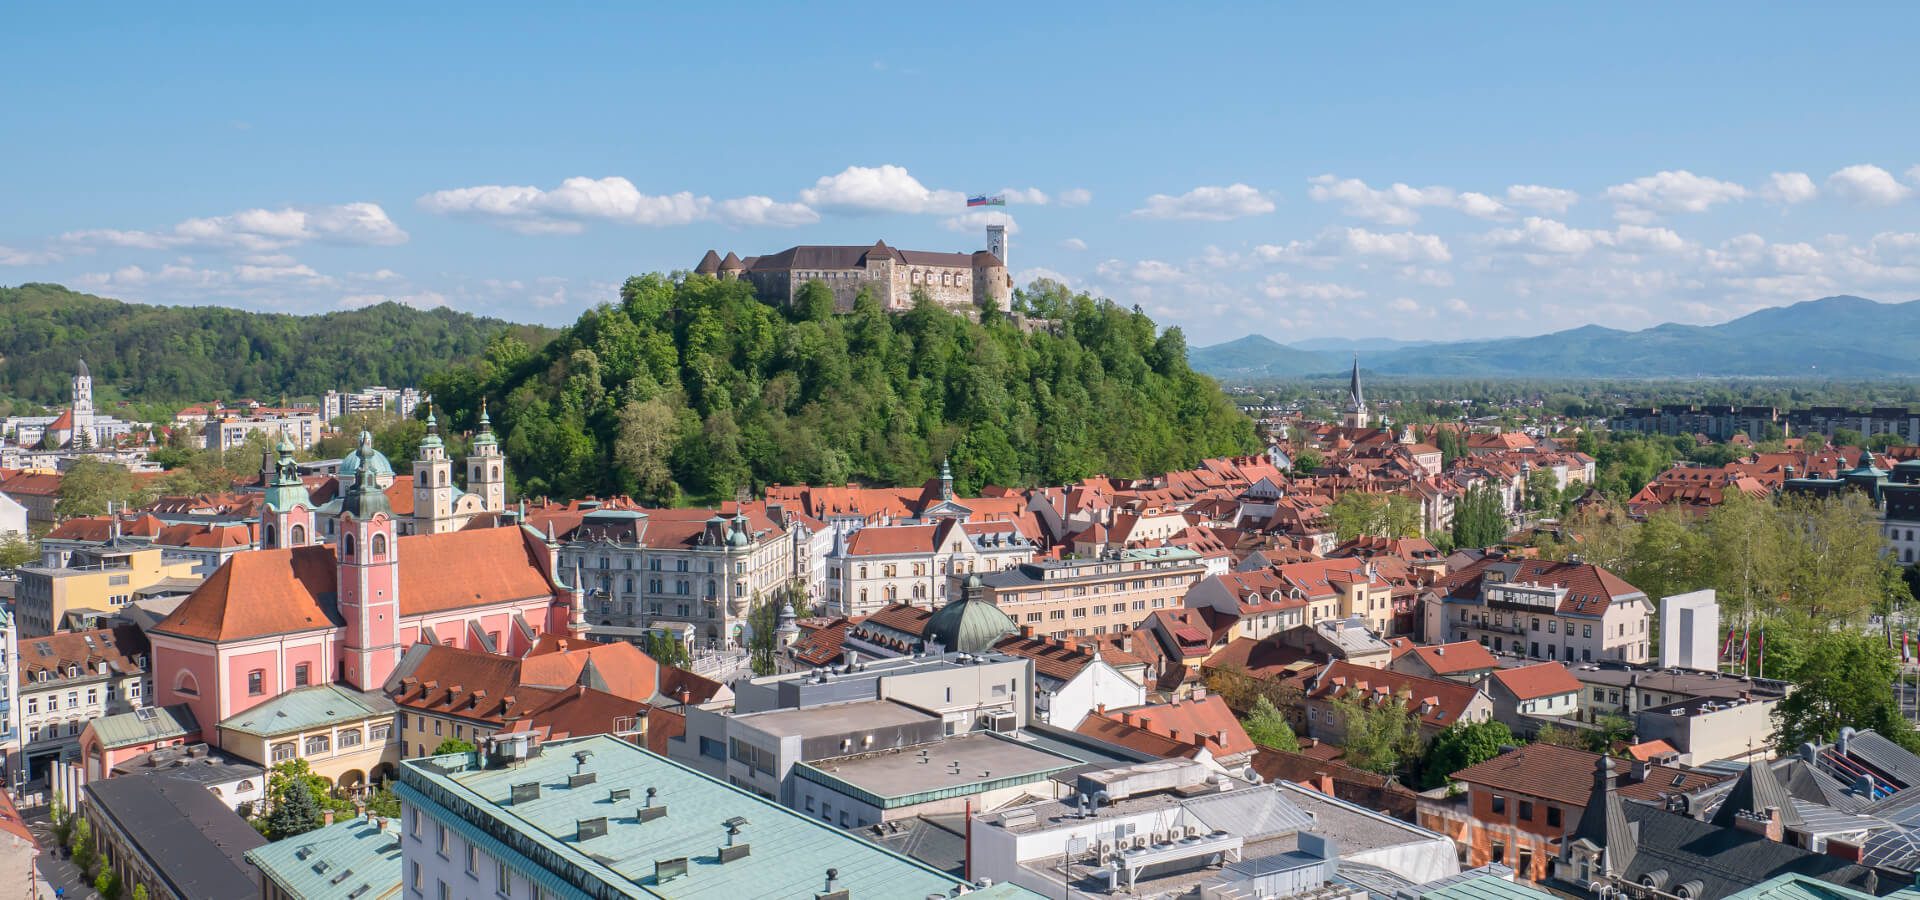 Co warto wiedzieć przed podróżą do Słowenii? (informacje praktyczne)